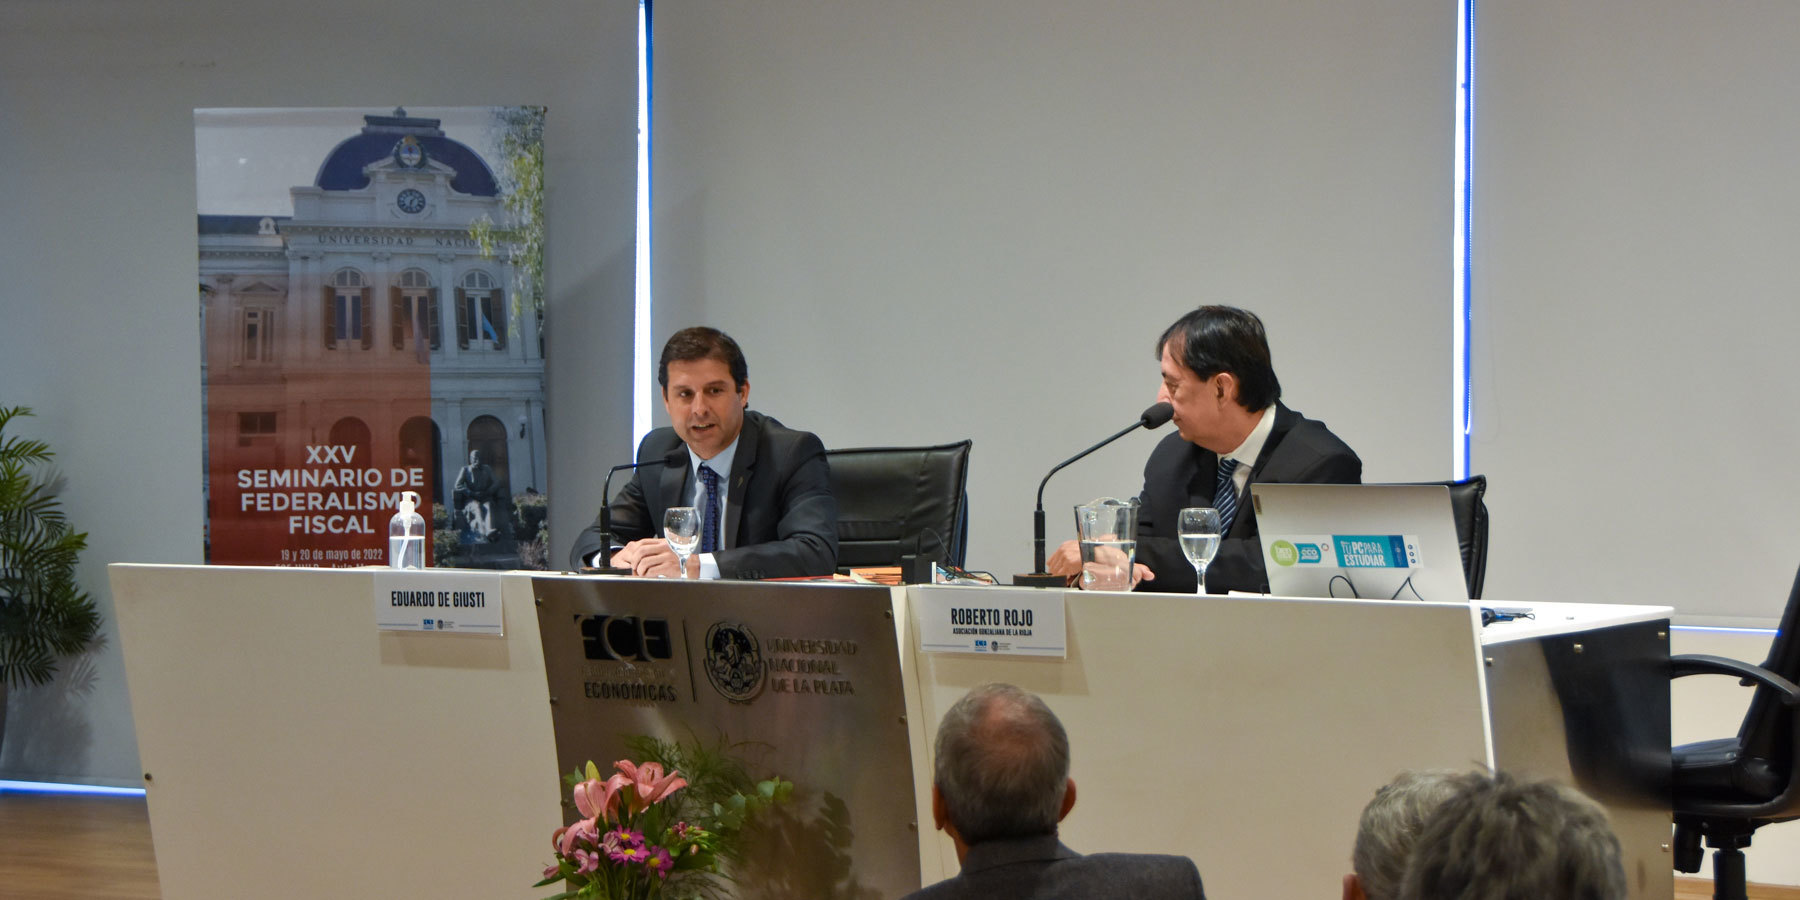 Apertura del seminario a cargo del Decano de la Facultad de Ciencias Económicas UNLP, Mg. Eduardo De Giusti